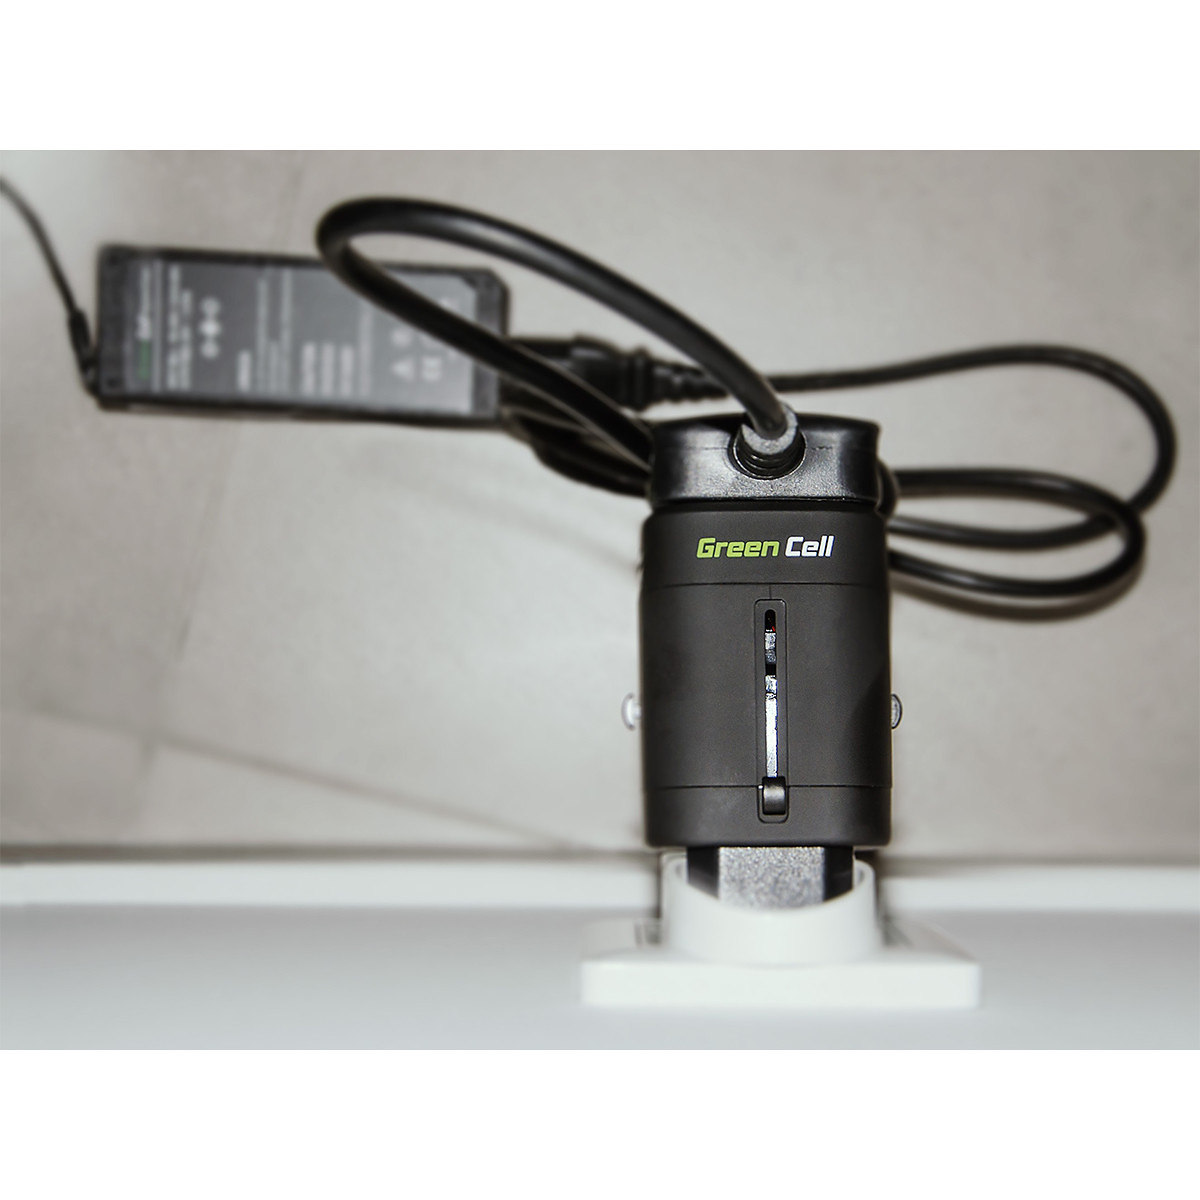 Green Cell Universaladapter till eluttag med USB-uttag, svart